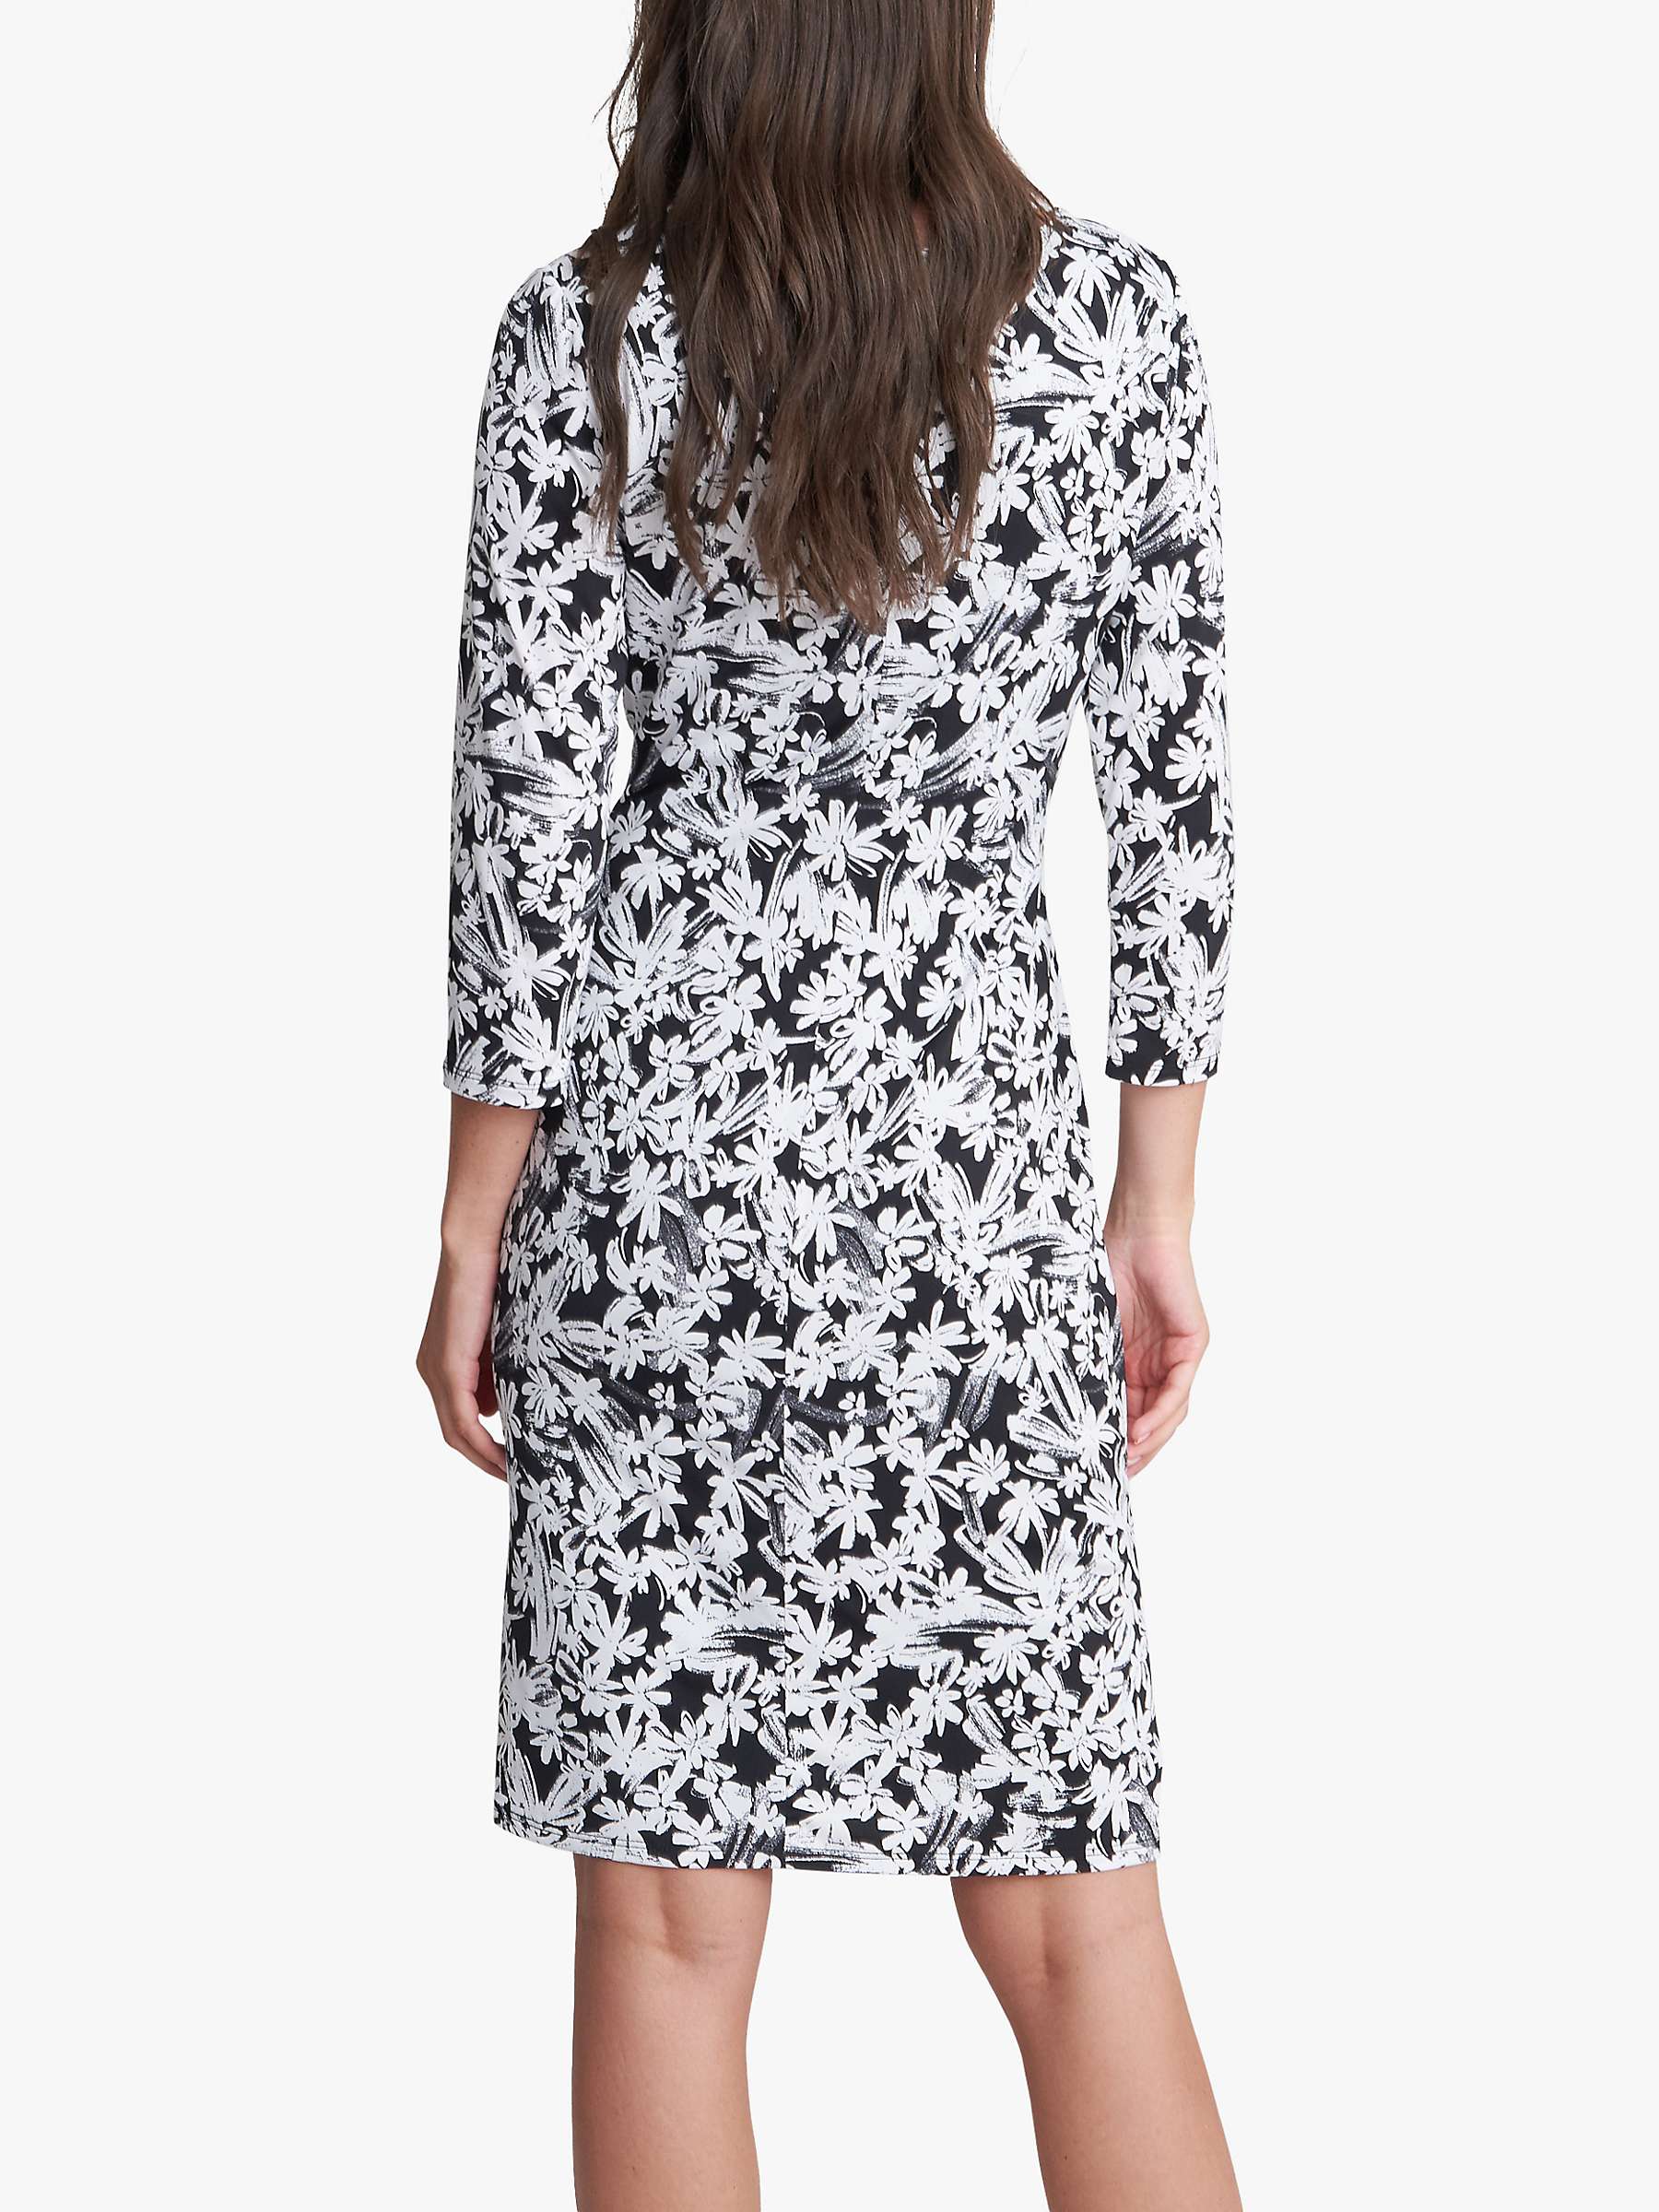 Buy Gina Bacconi Ethney Floral Jersey Dress, Black/White Online at johnlewis.com